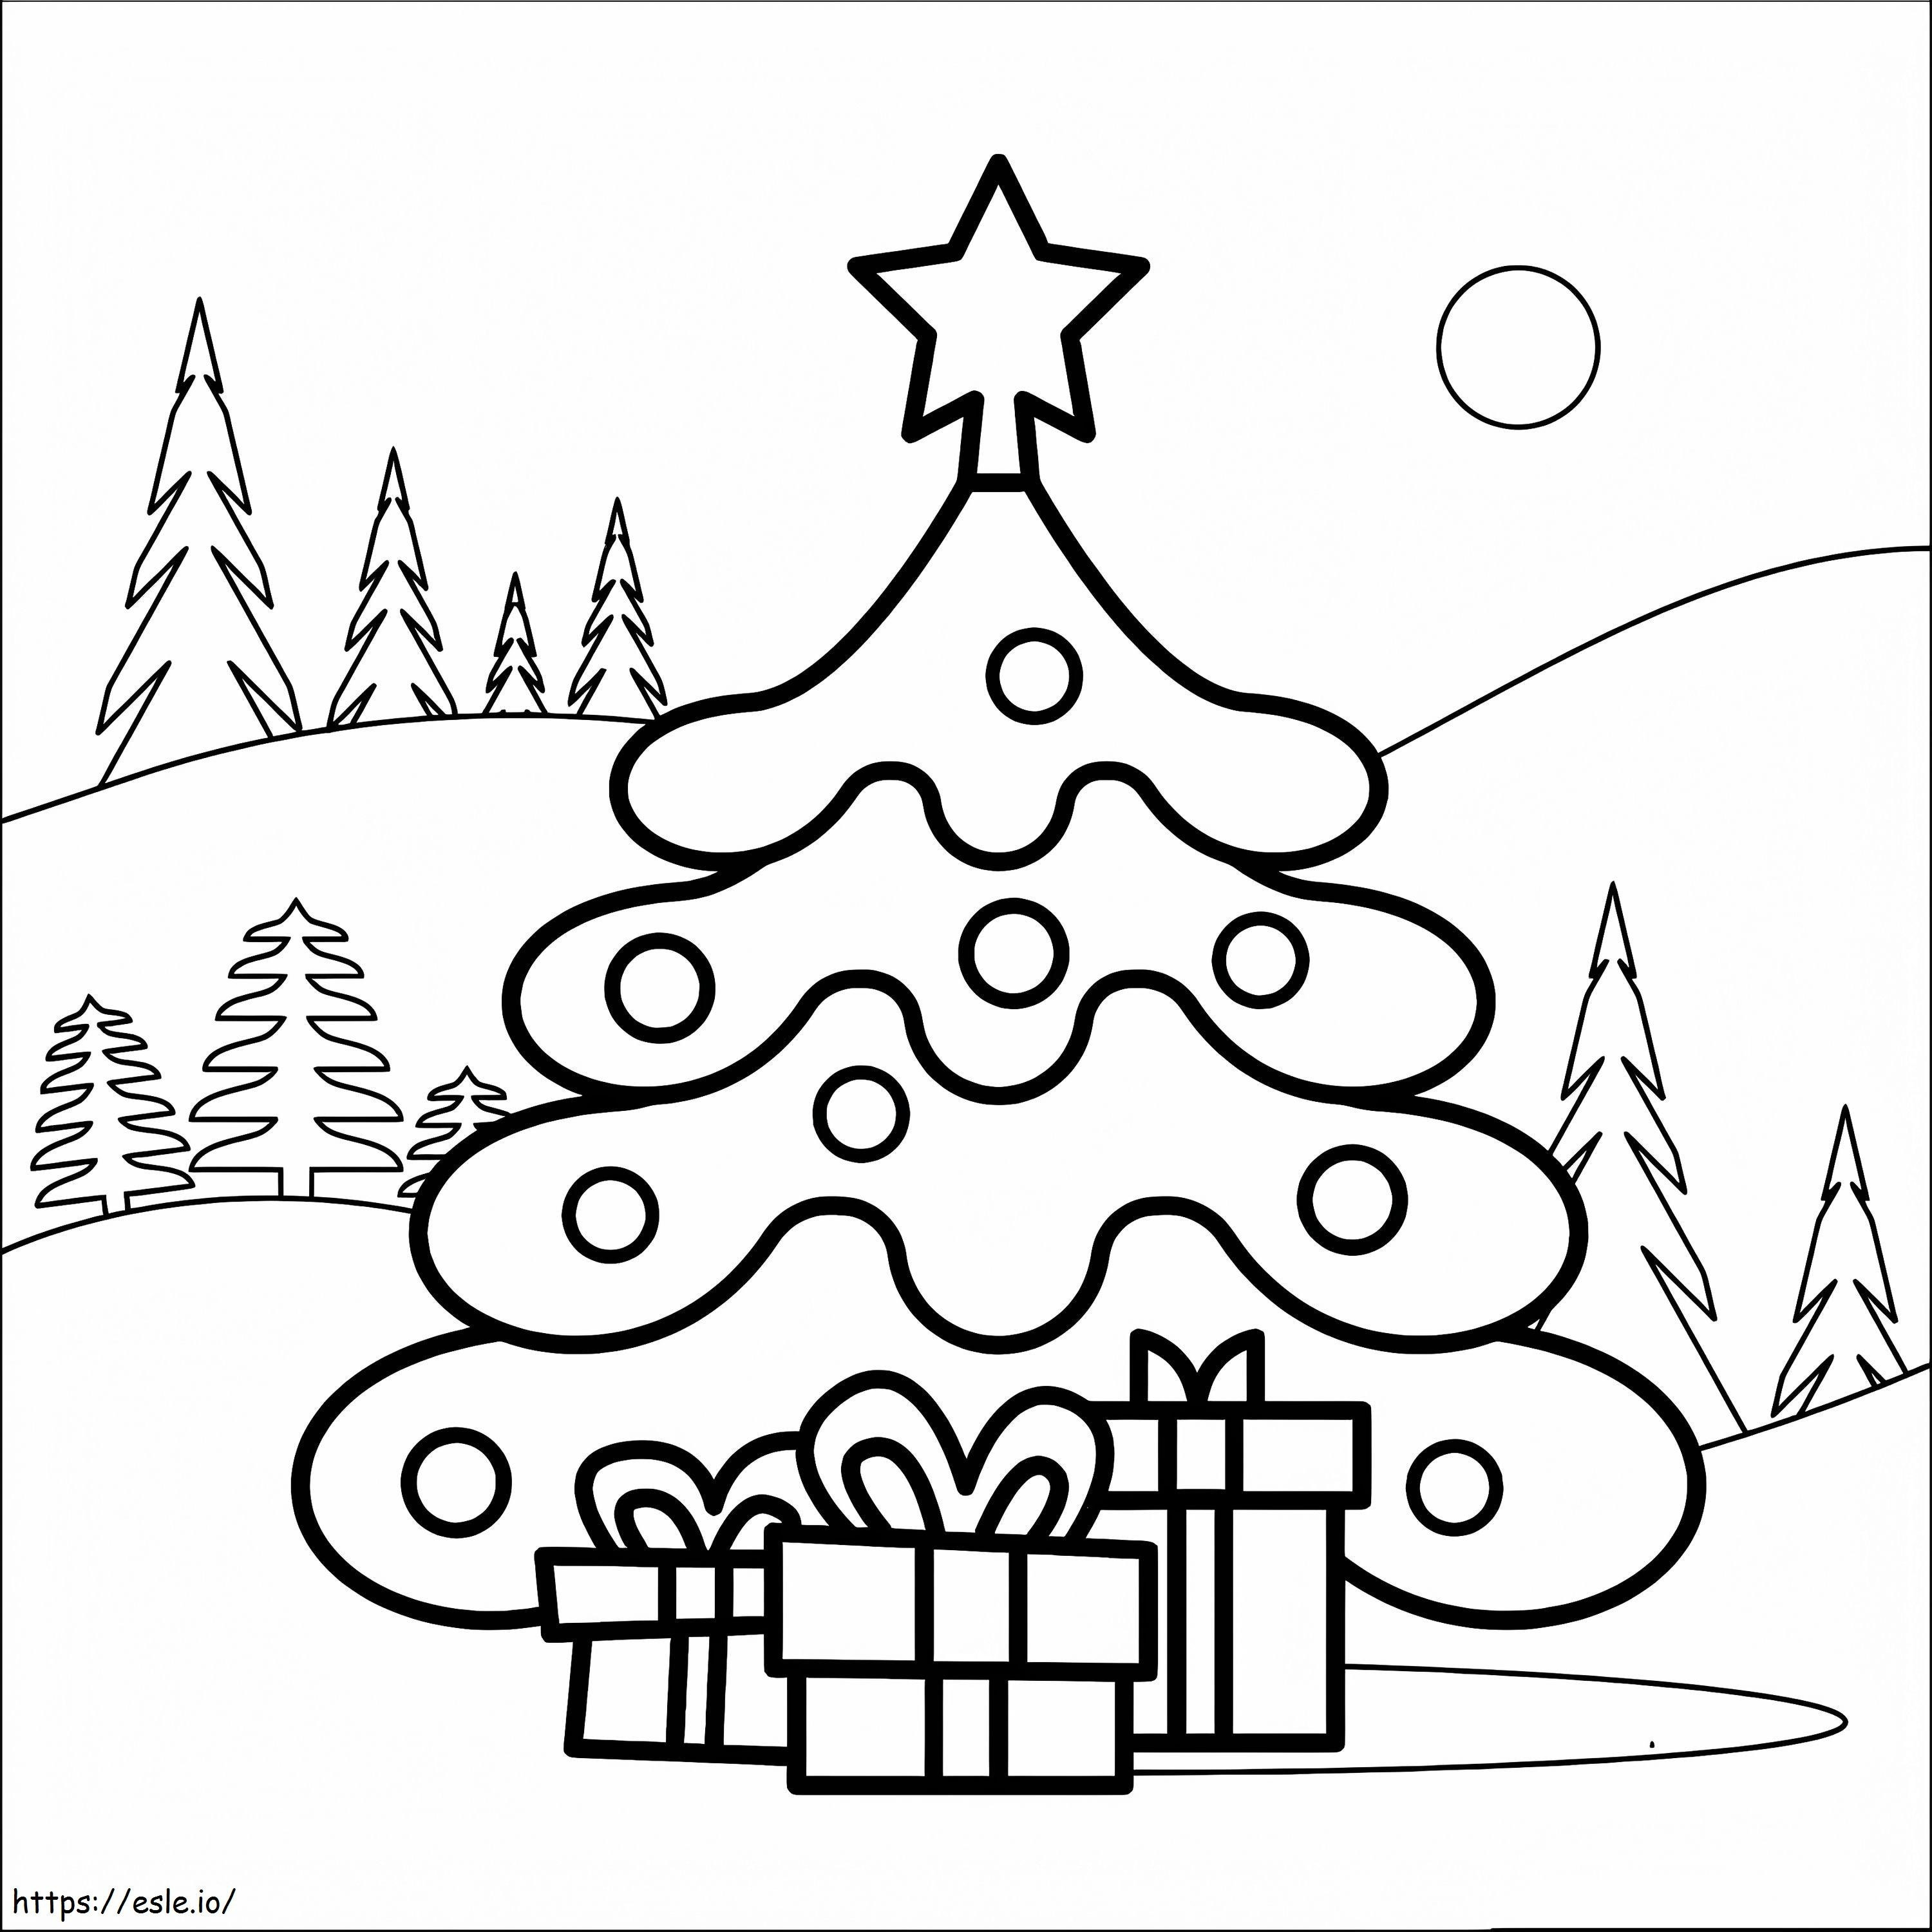 Weihnachtsbaum und Geschenke 3 ausmalbilder